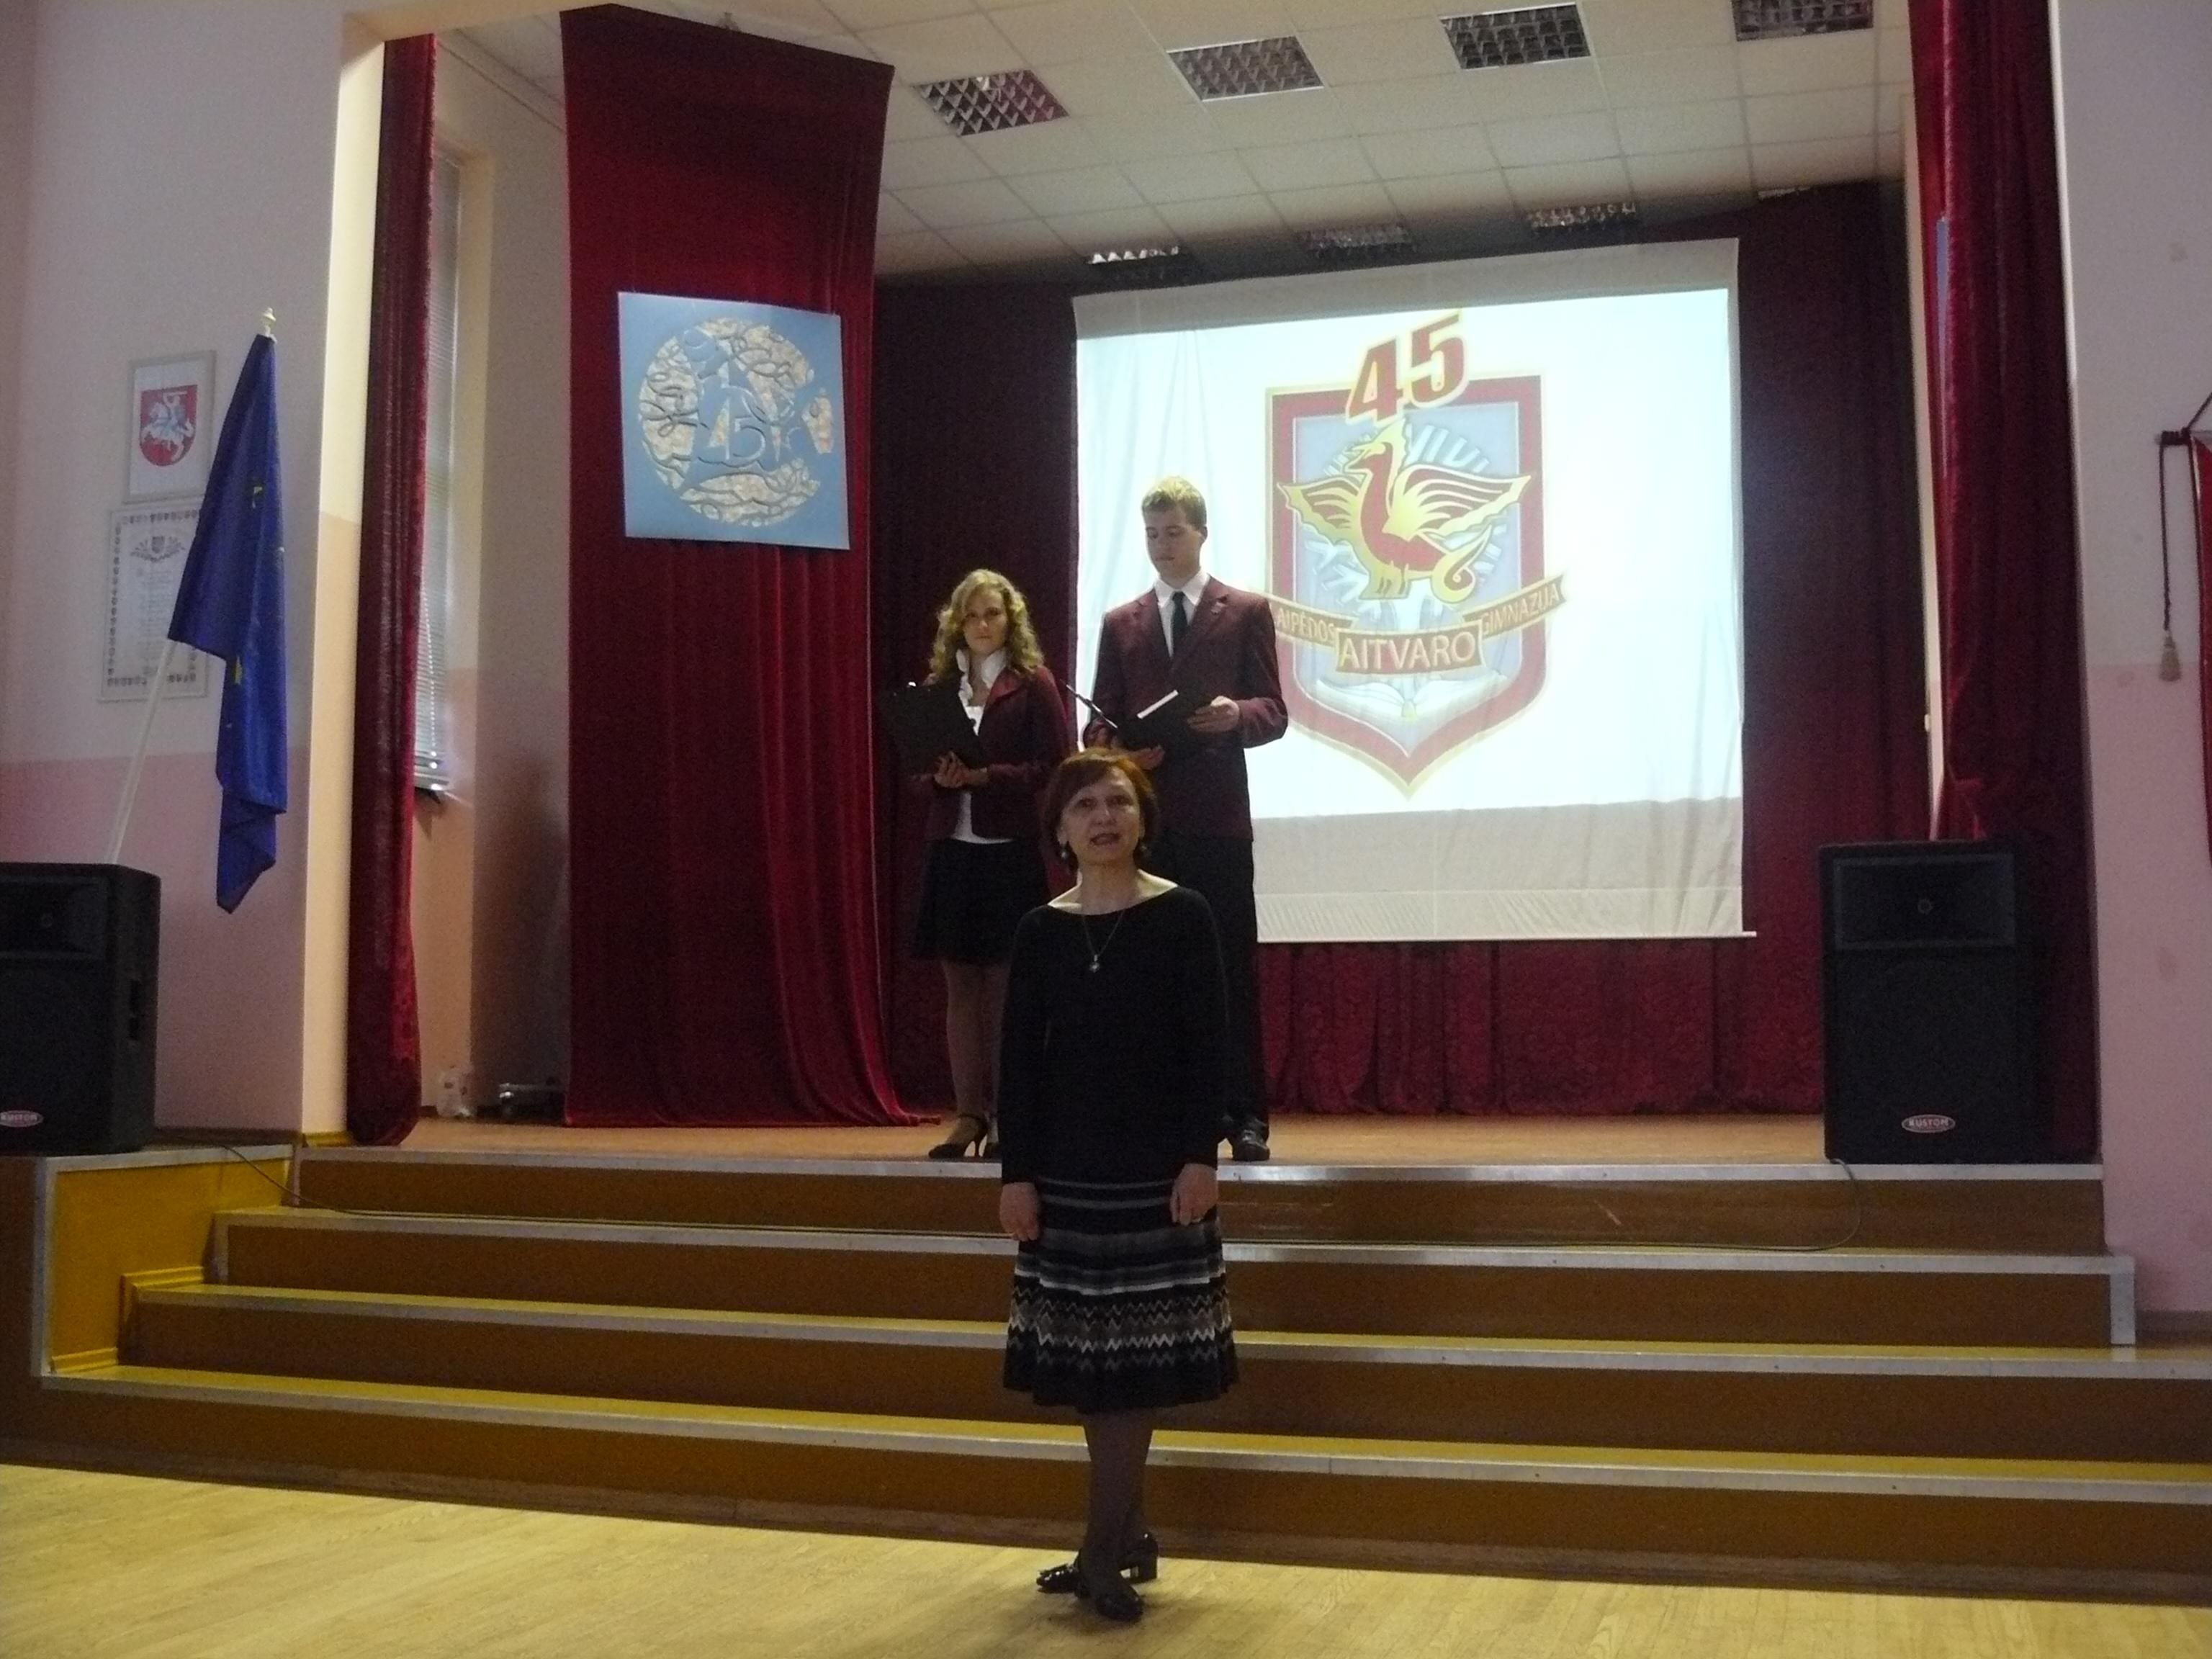 Директор гимназии "Айтварас" поздравляет всех учеников, бывших и настоящих, с юбилеем.